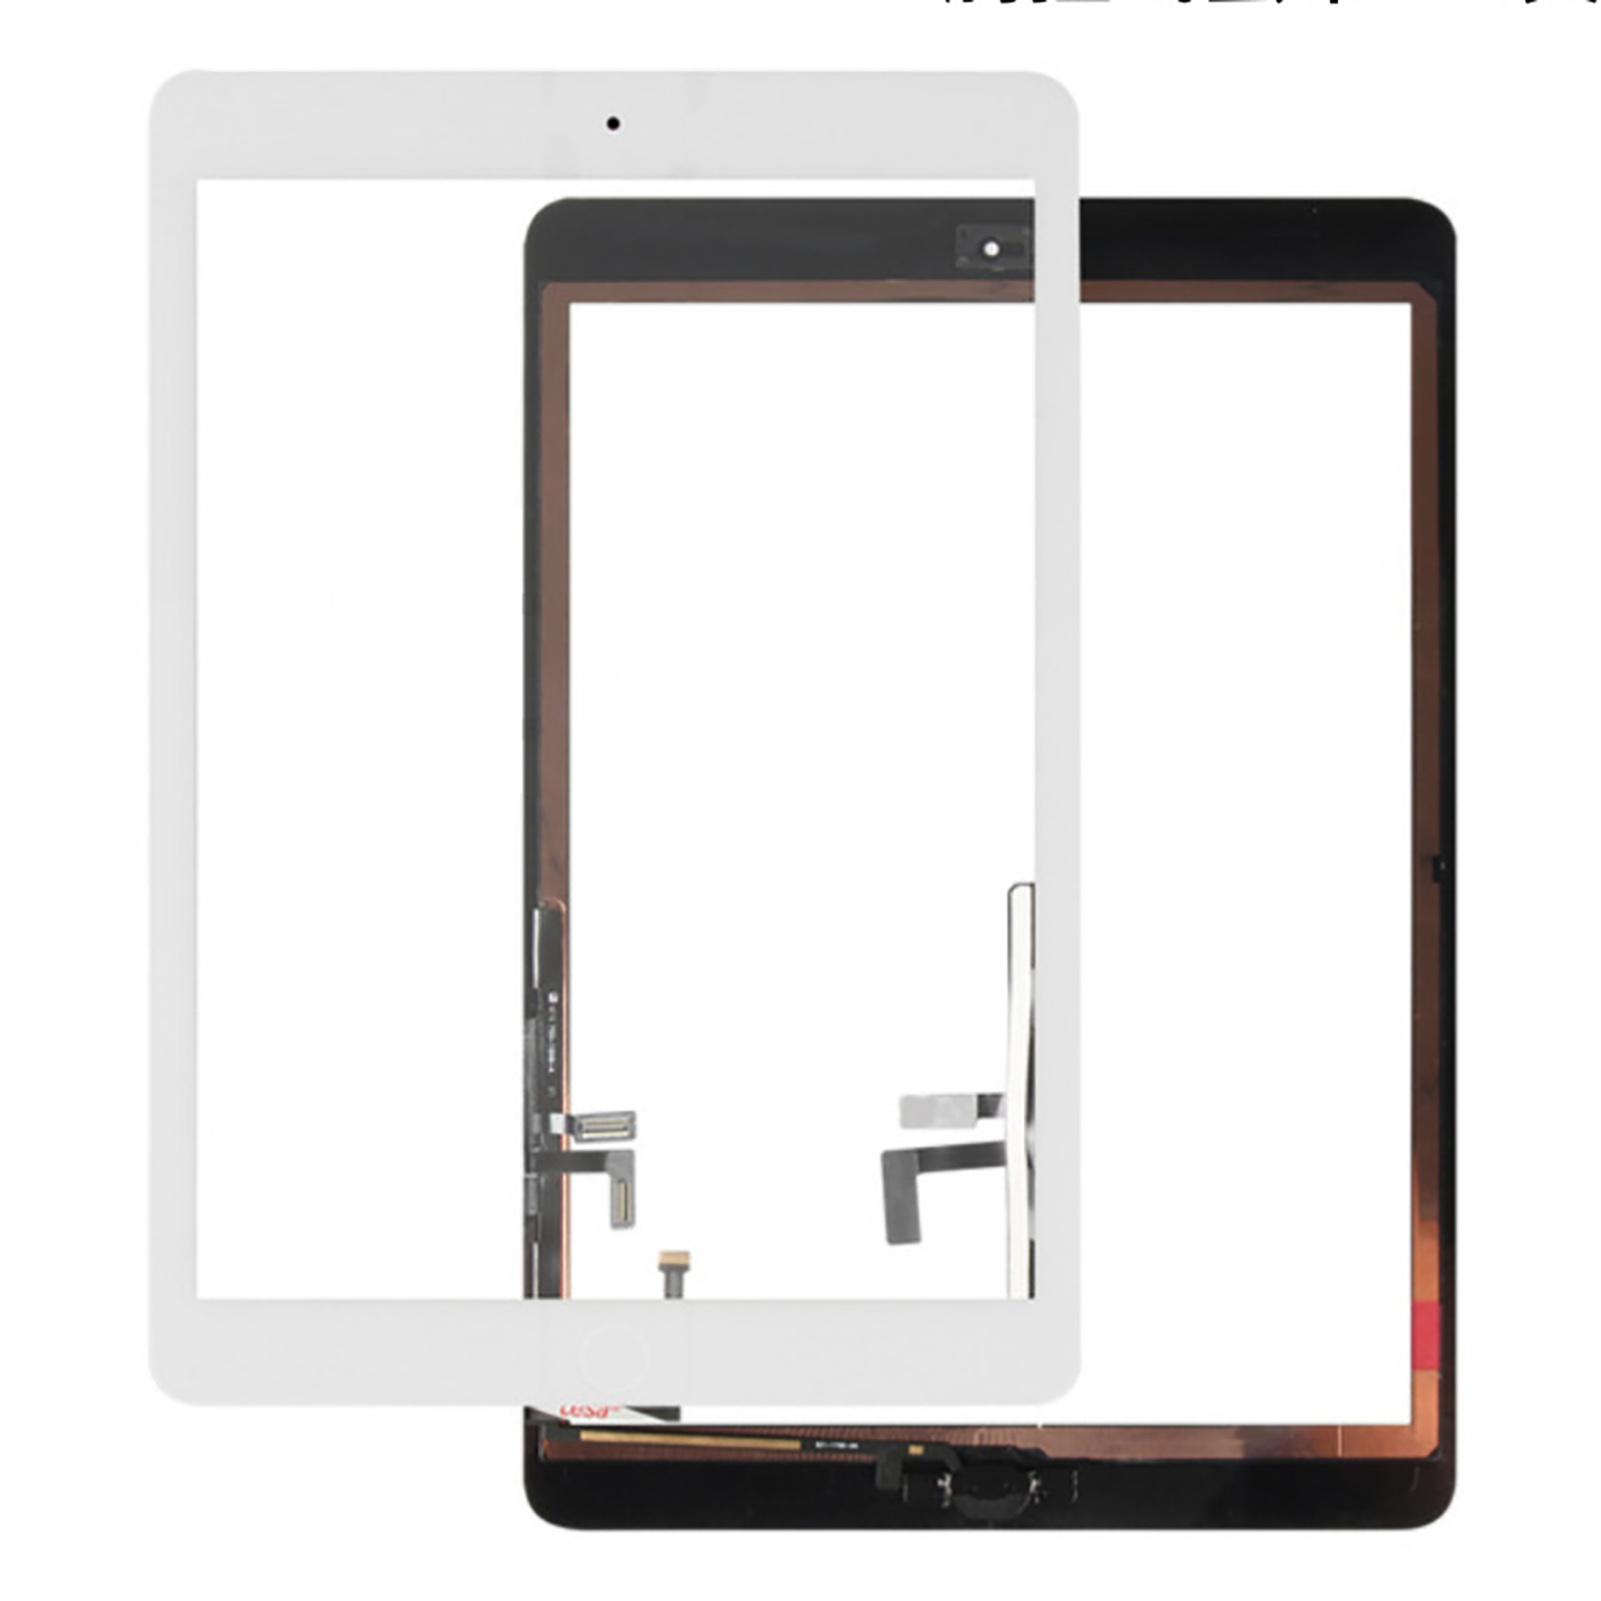 Изображение товара: Износостойкий набор инструментов для замены сенсорного экрана аксессуары для планшета для iPad 5